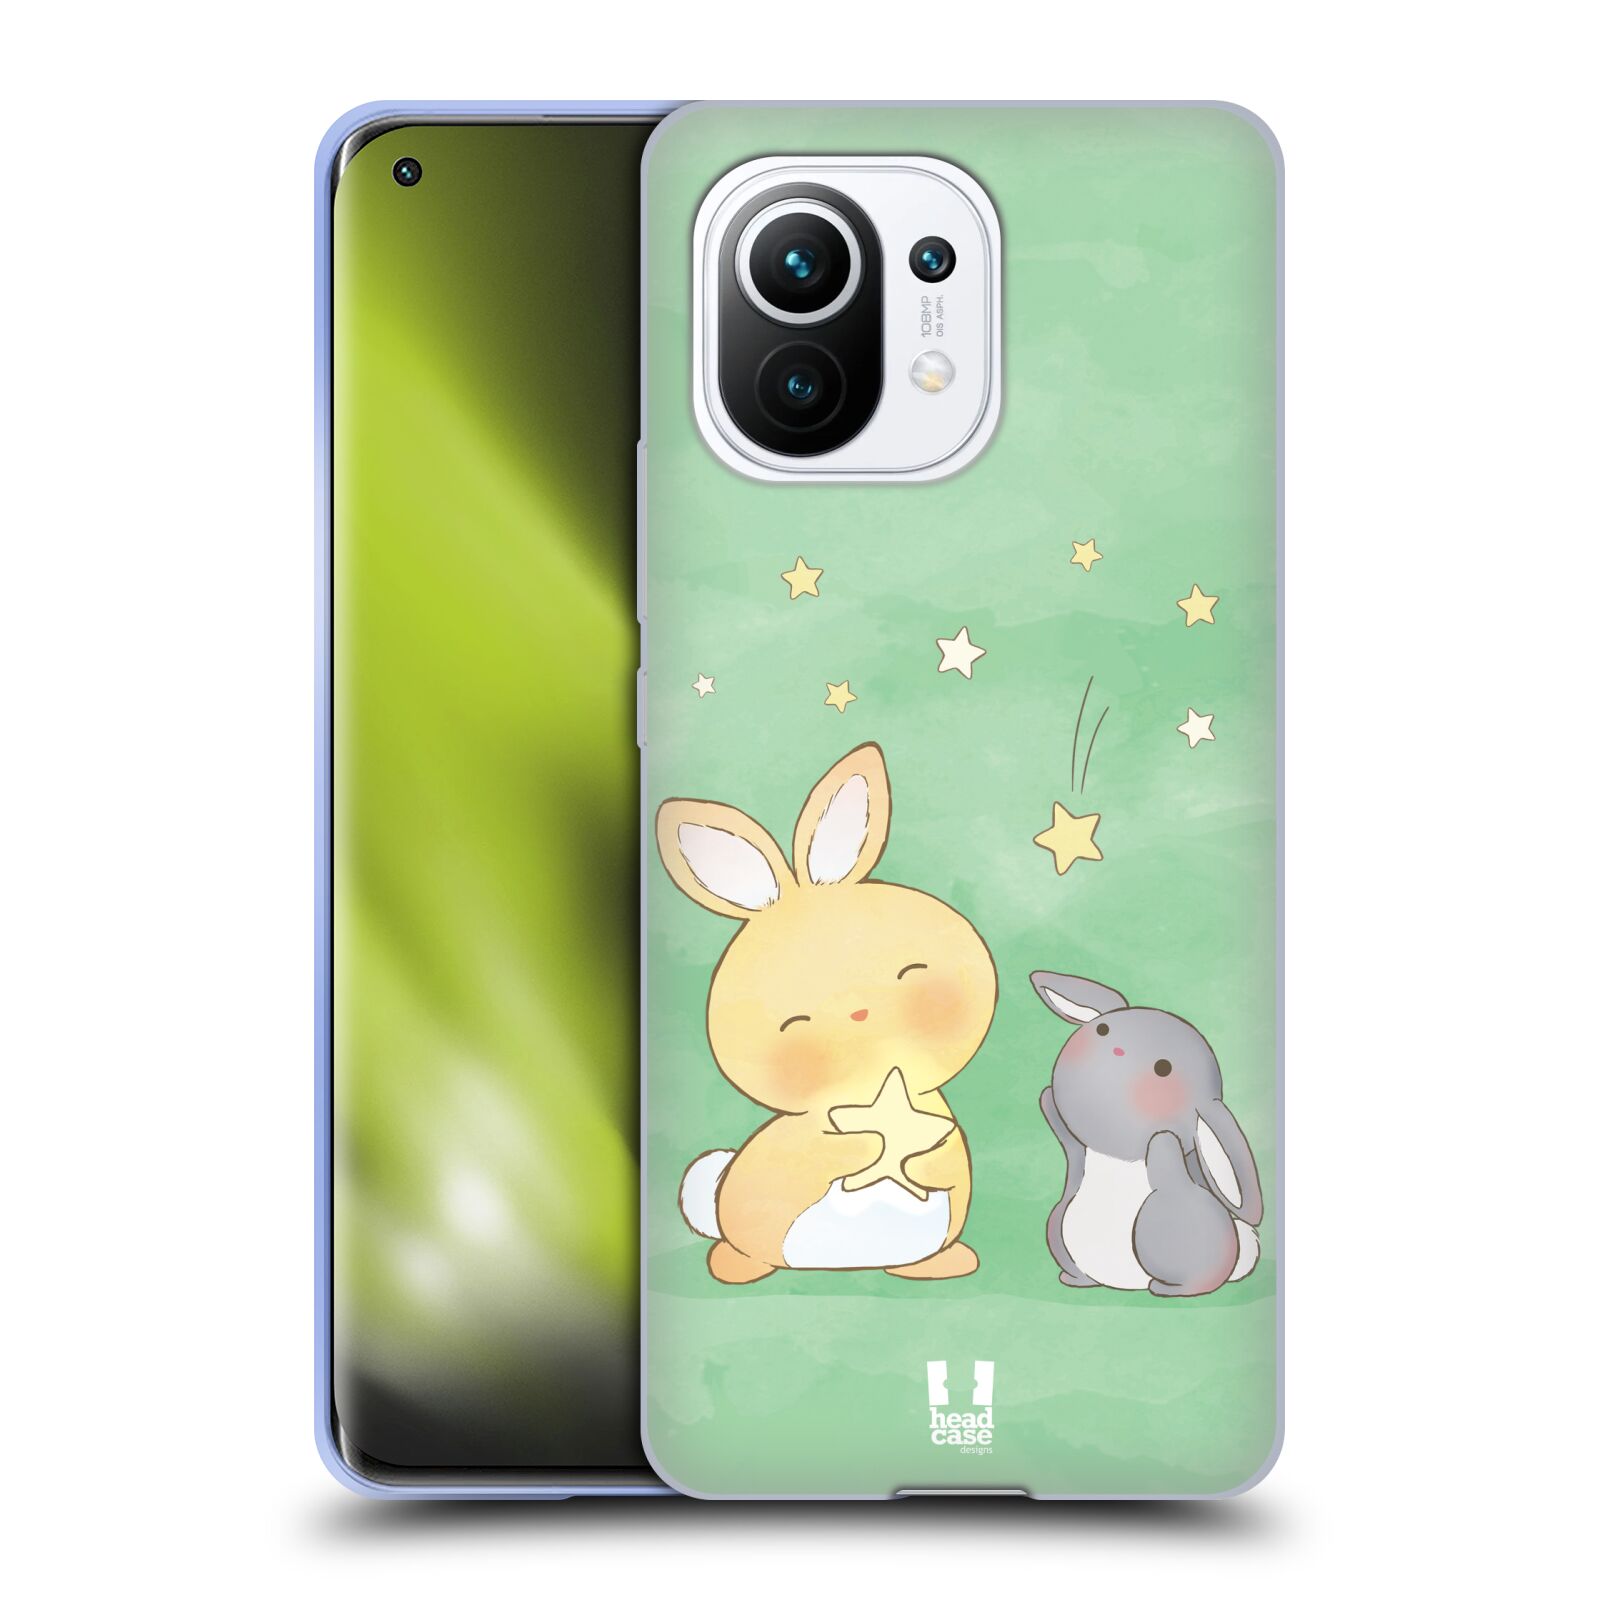 Plastový obal HEAD CASE na mobil Xiaomi Mi 11 vzor králíček a hvězdy zelená